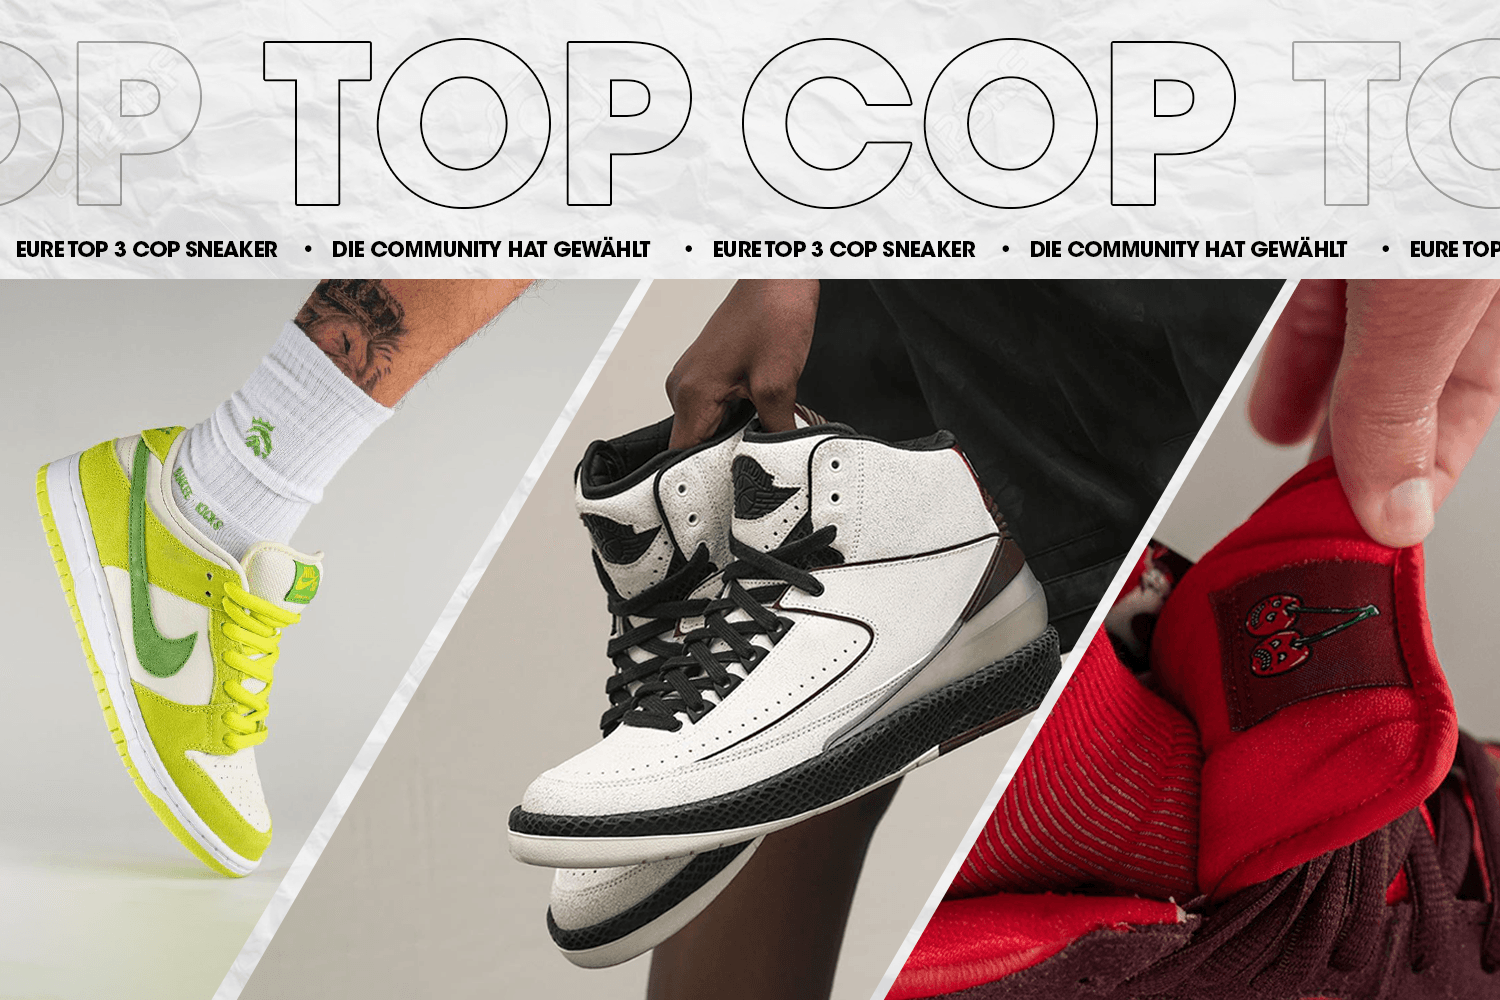 Die Community hat gewählt: Eure Top 3 Cop Sneaker Woche 22